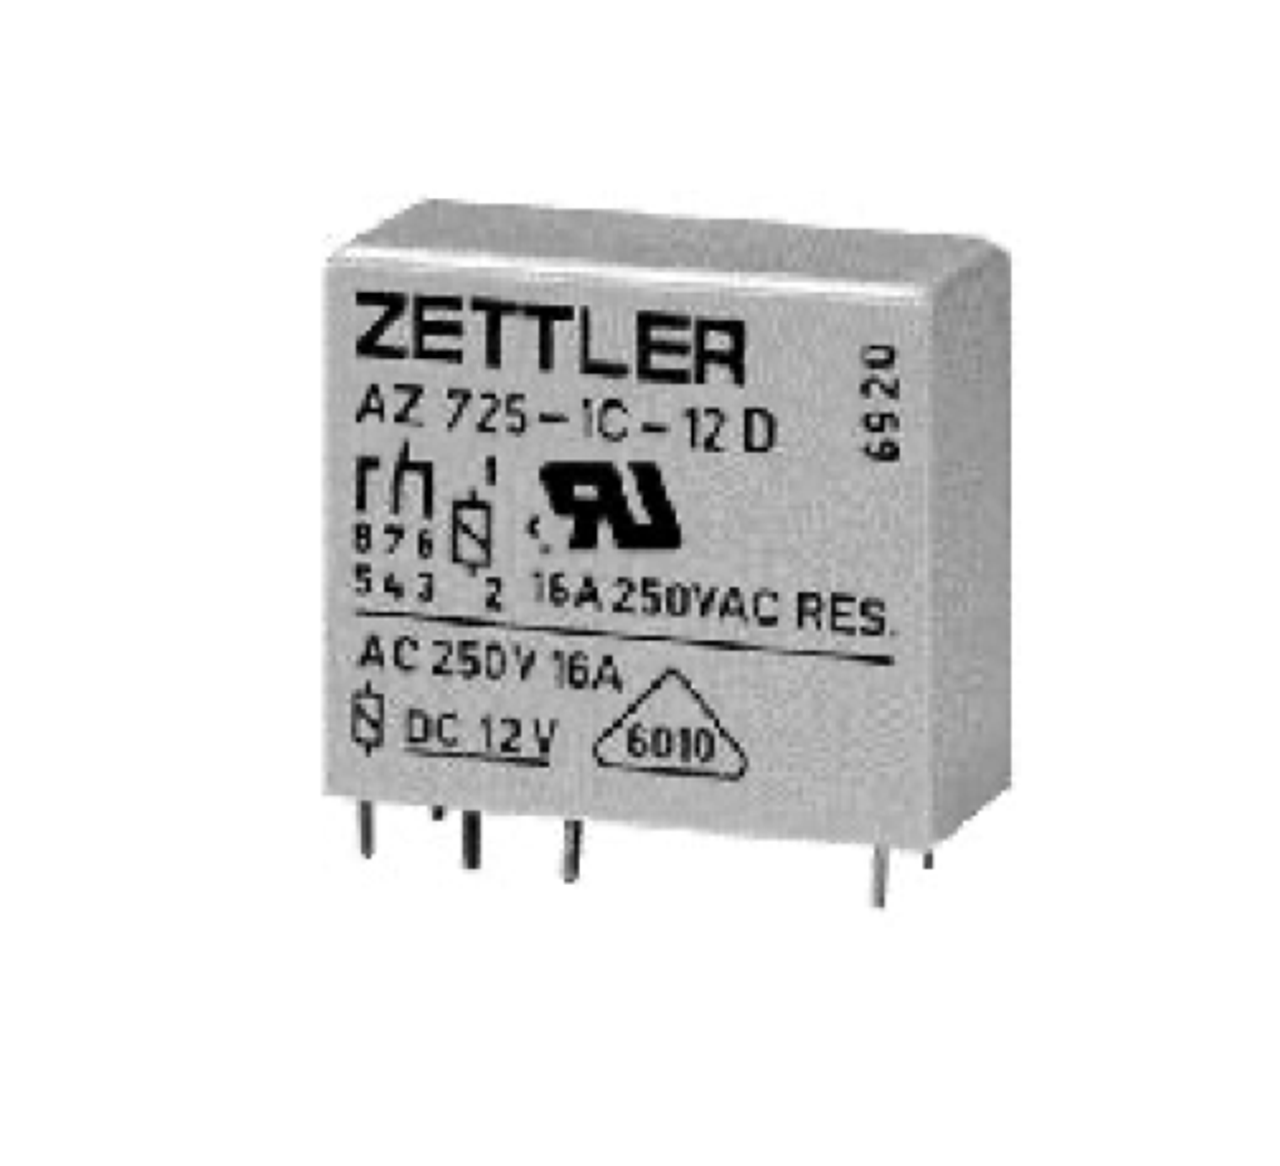 American Zettler AZ725-1CE-5D Power Relay